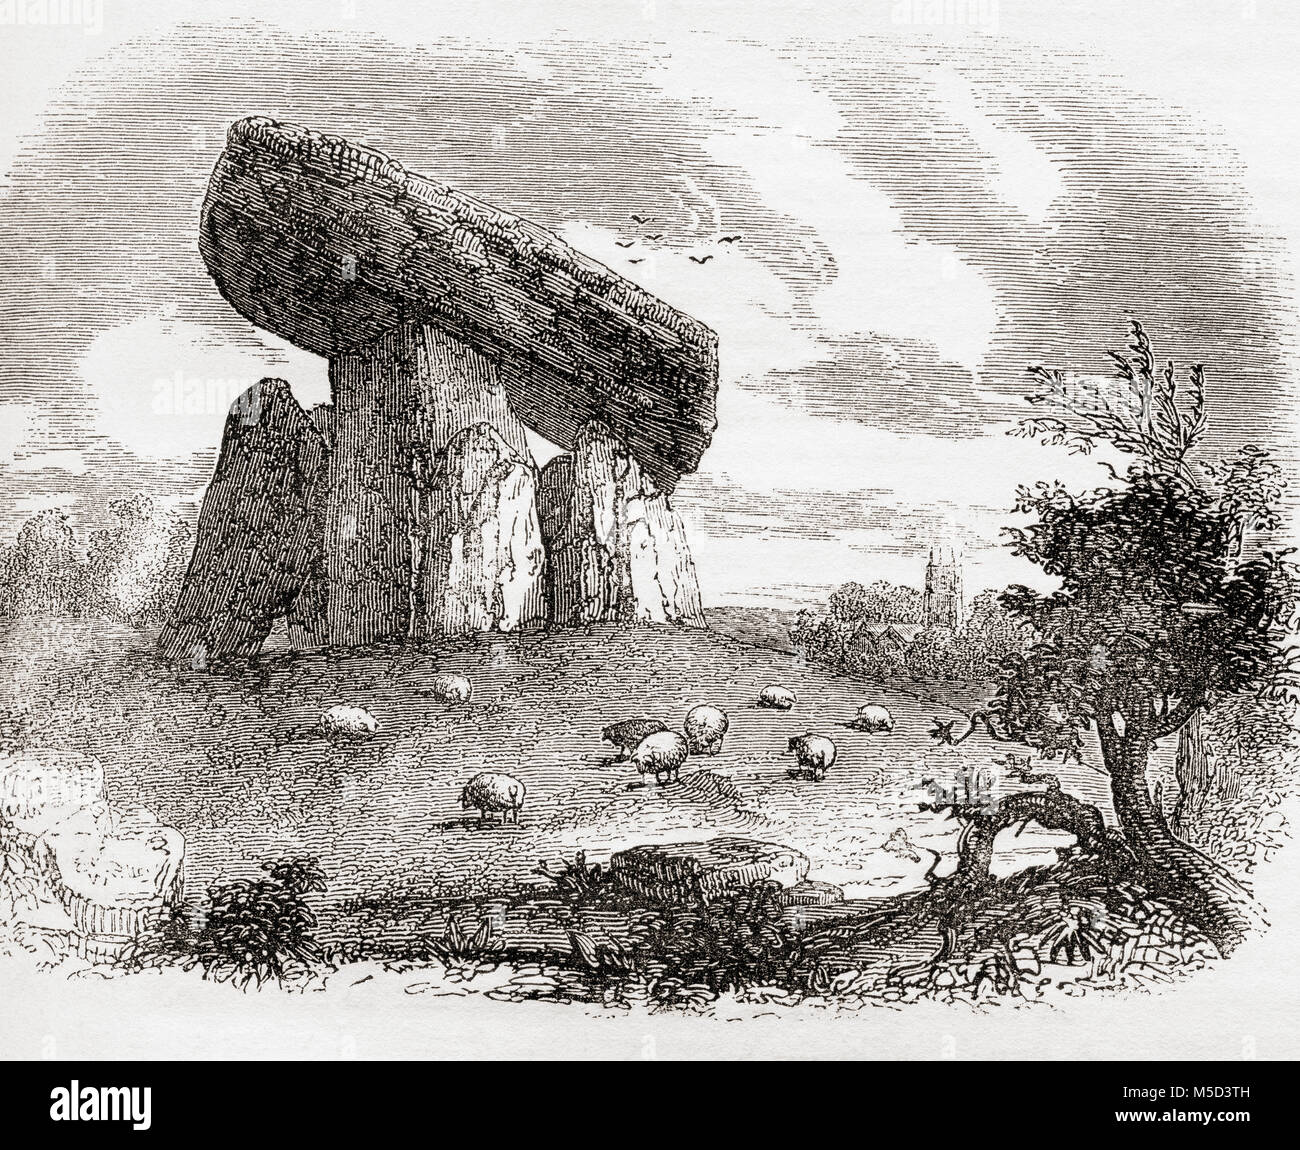 Trethevy Quoit, une tombe mégalithique à Cornwall, en Angleterre. Connu localement comme "la maison du géant' il est 9 pieds (2,7 m) de haut et se compose de cinq pierres coiffées d'une grande dalle. À partir de la vieille Angleterre : A Pictorial Museum, publié 1847. Banque D'Images